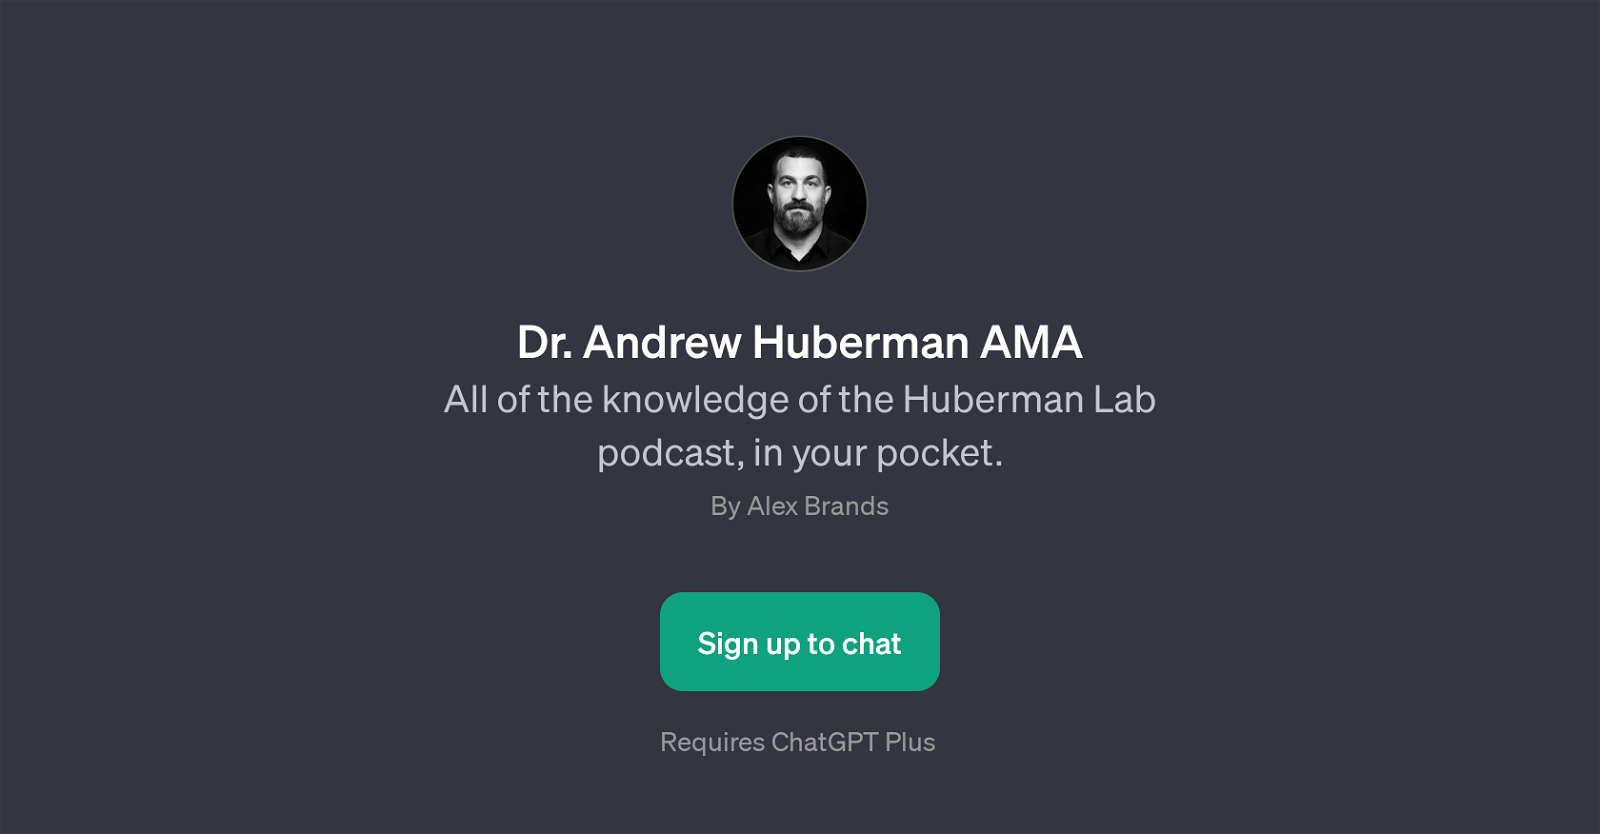 Dr. Andrew Huberman AMA website